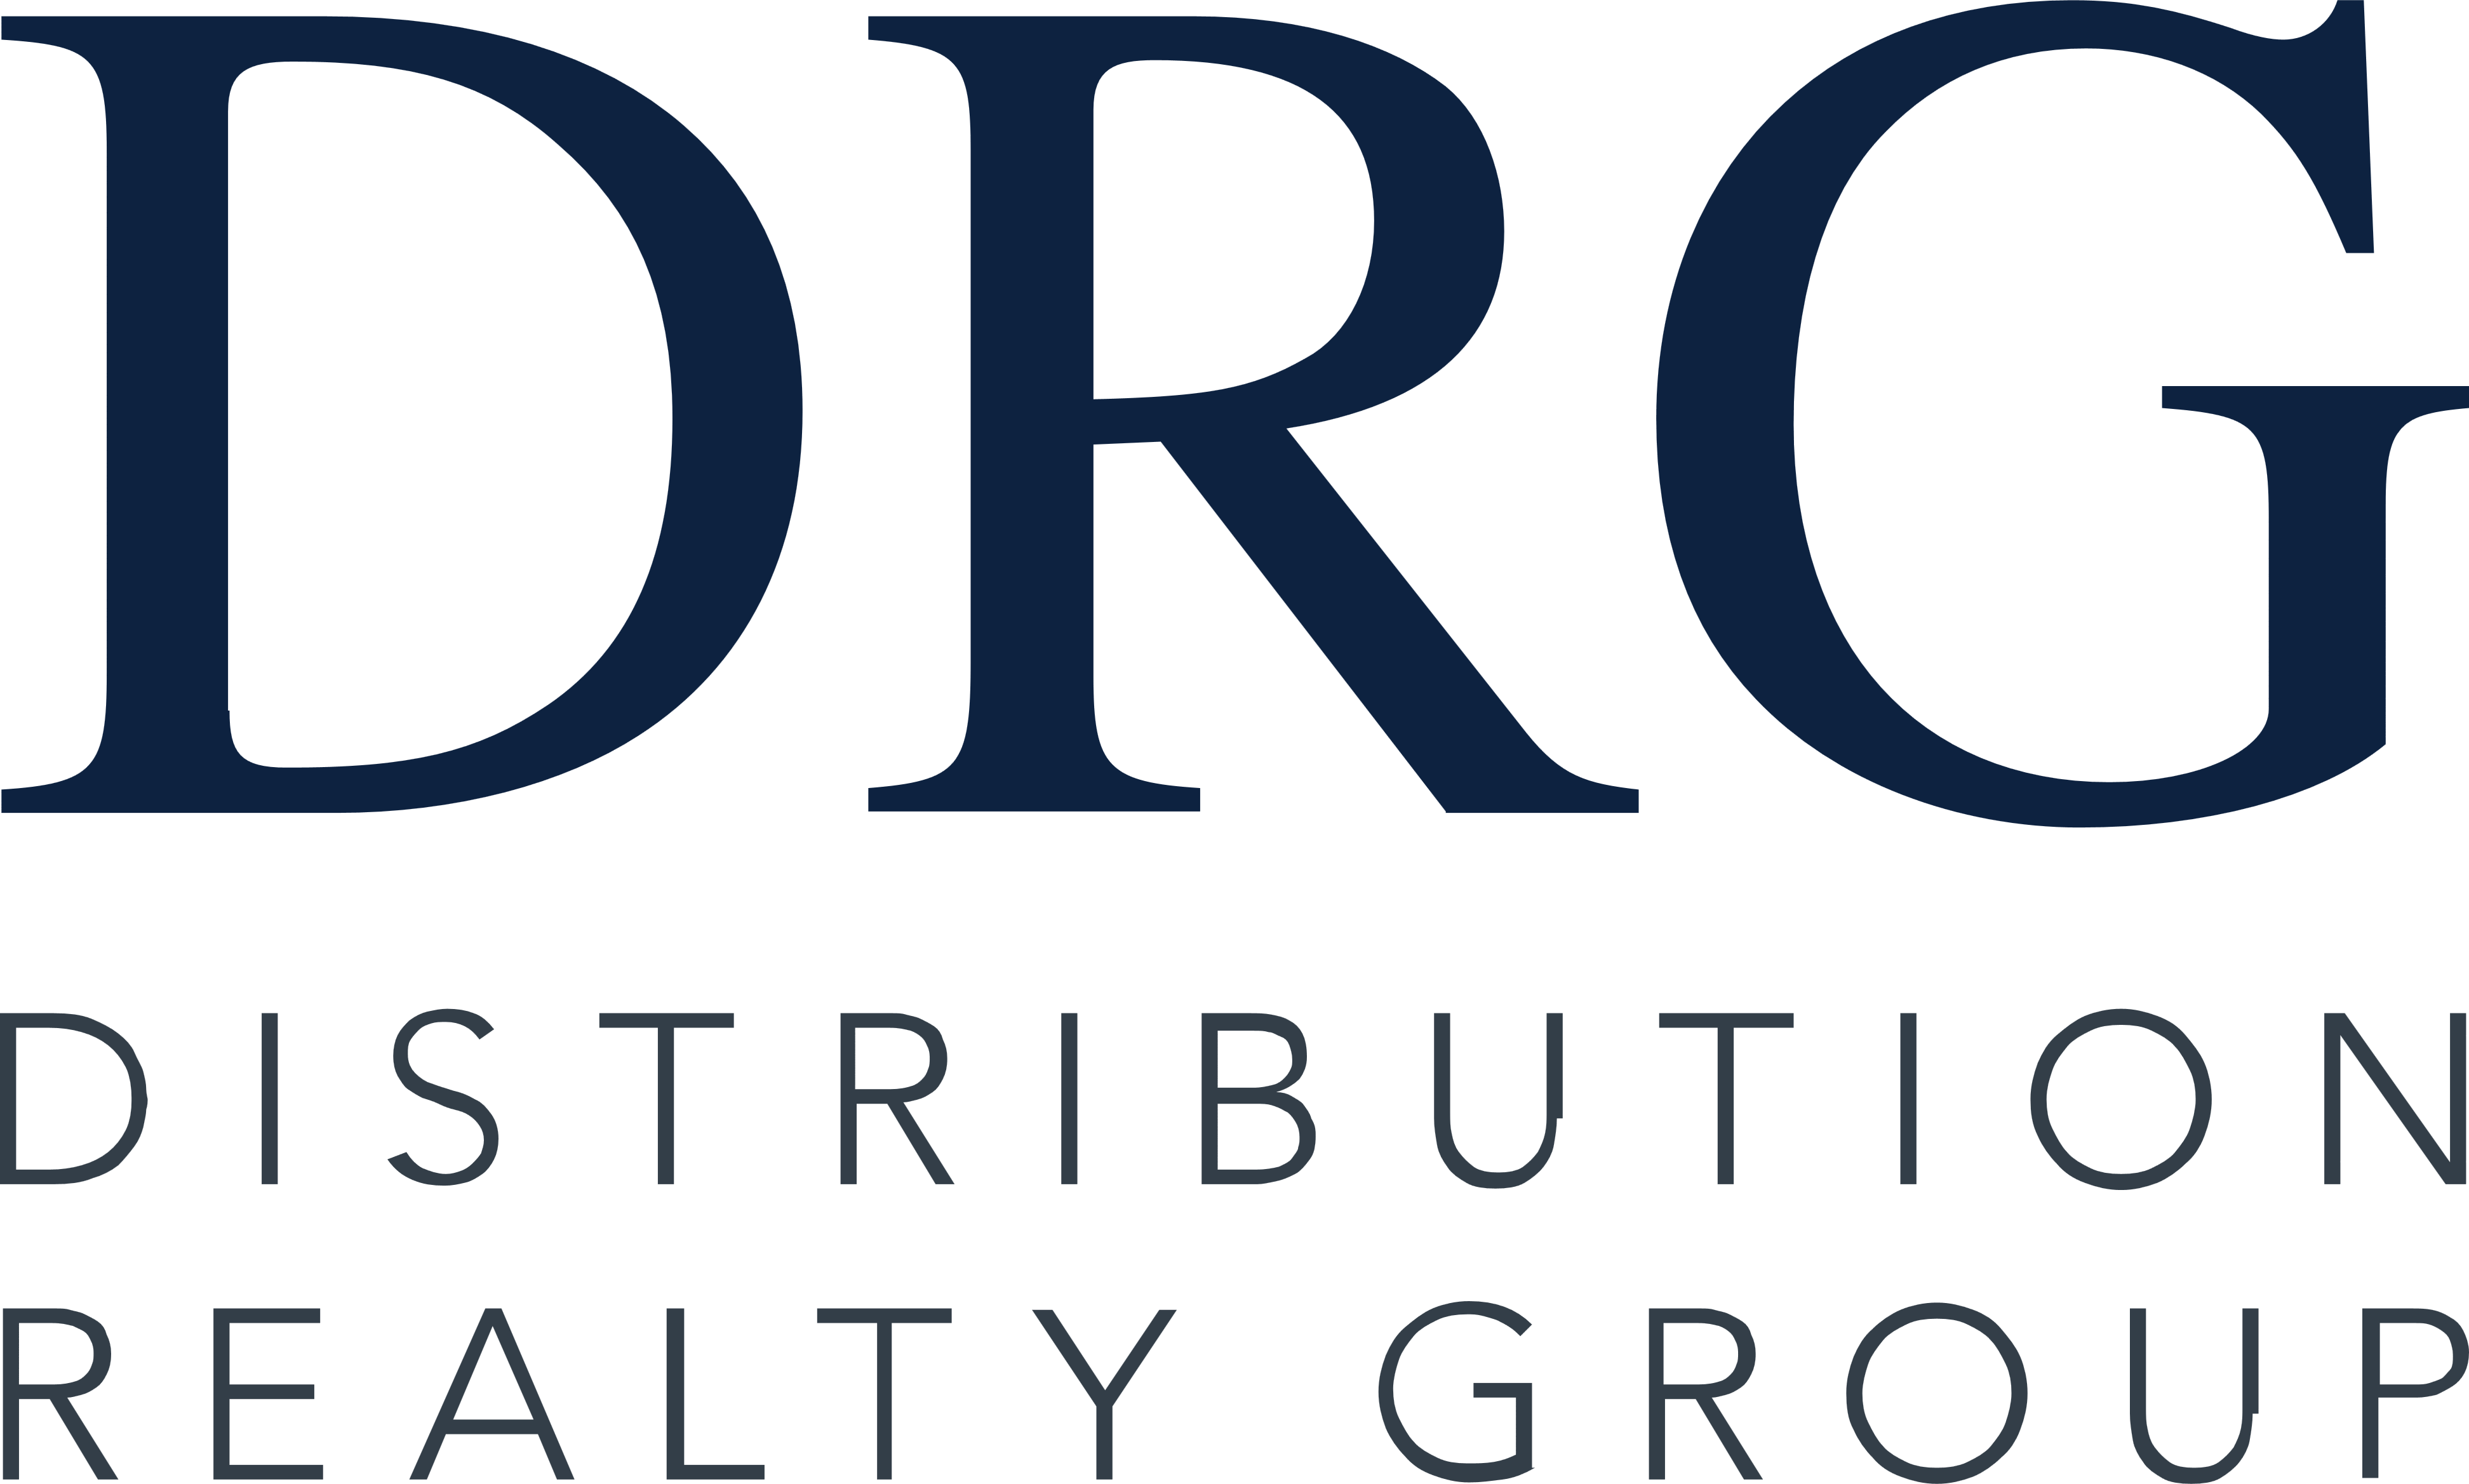 DRG Logo - DRG (Distribution Realty Group)